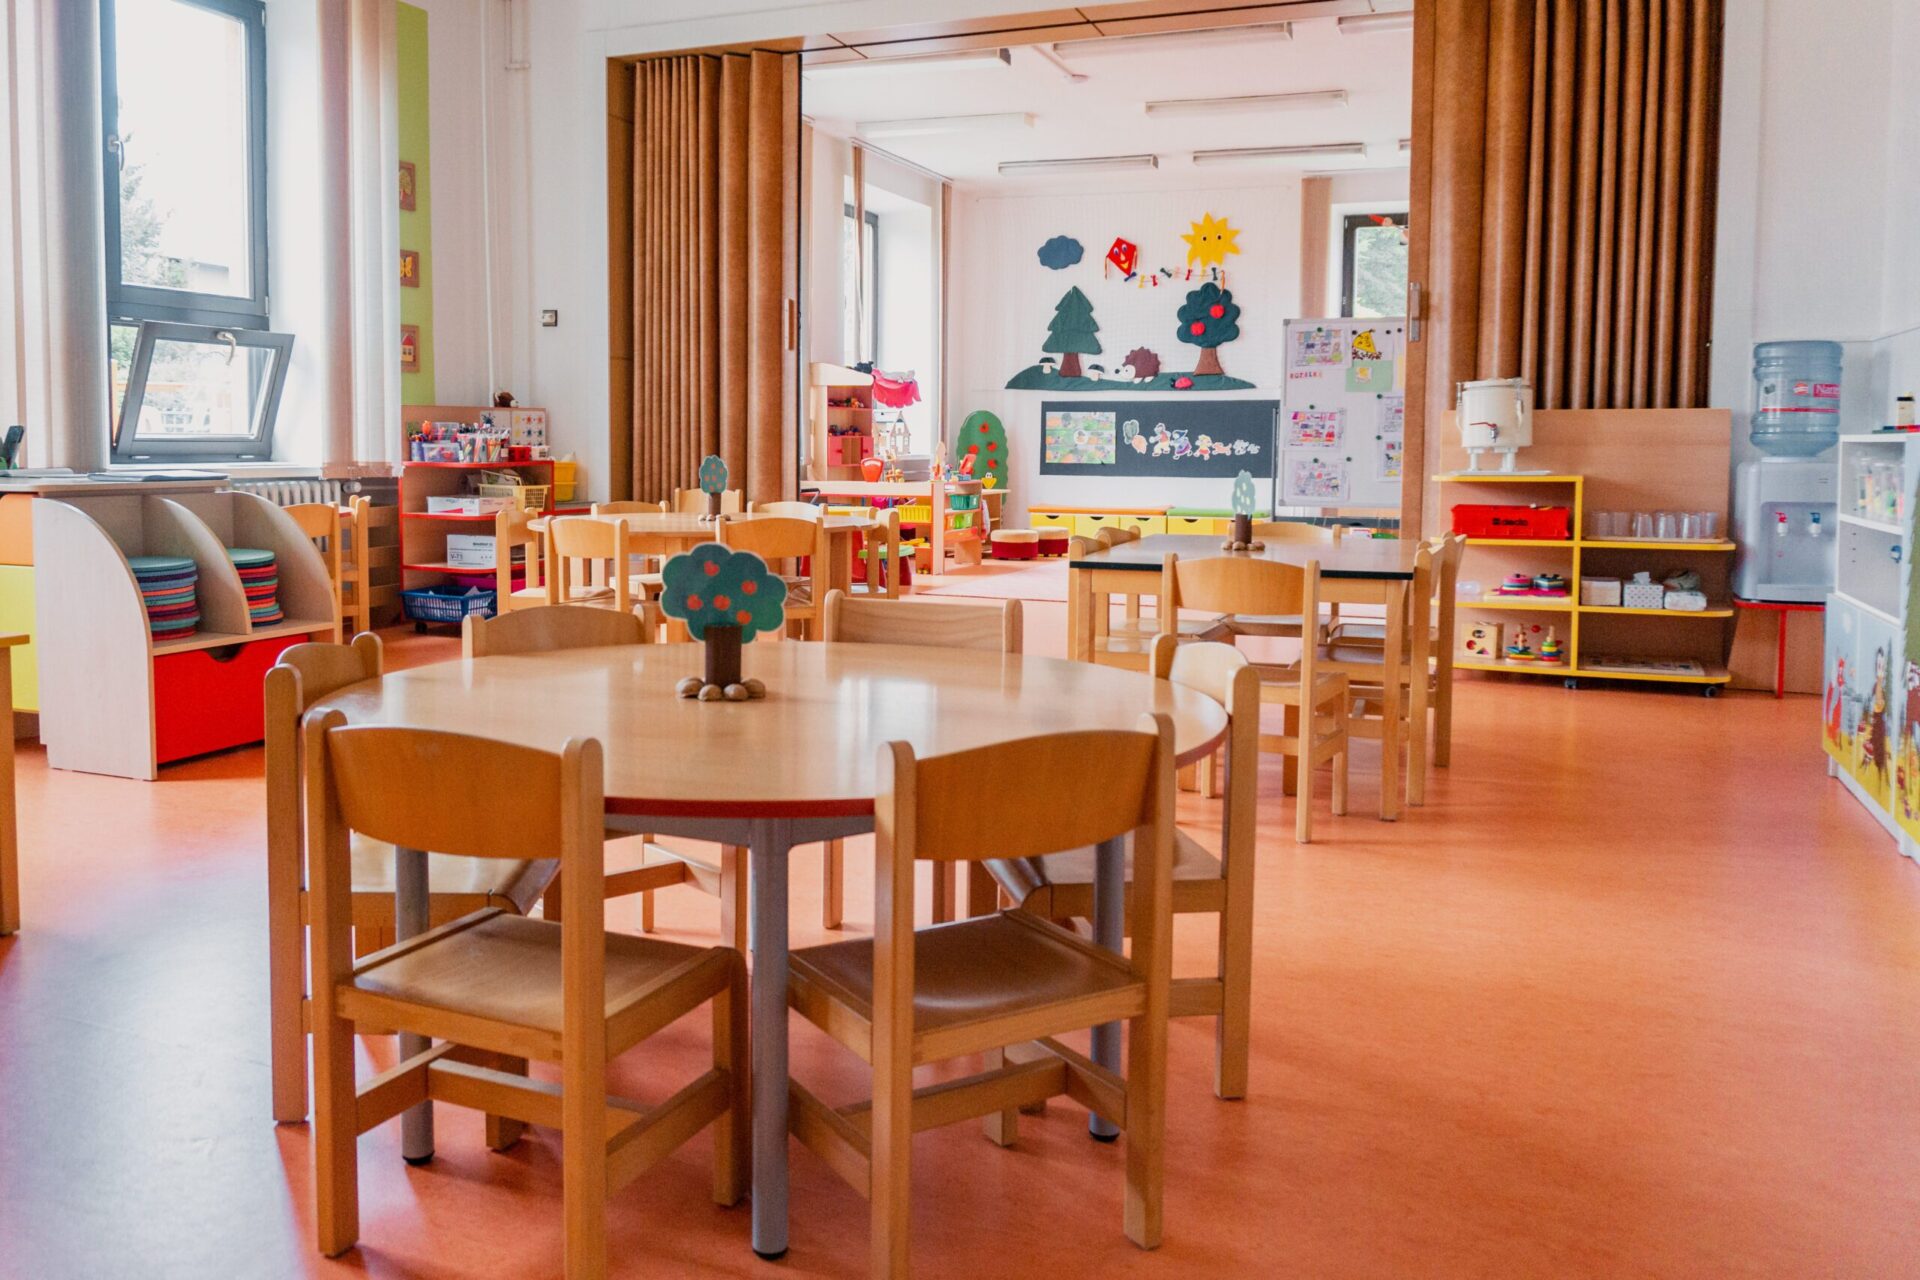 Společenská místnost pro aktivity s dětmi